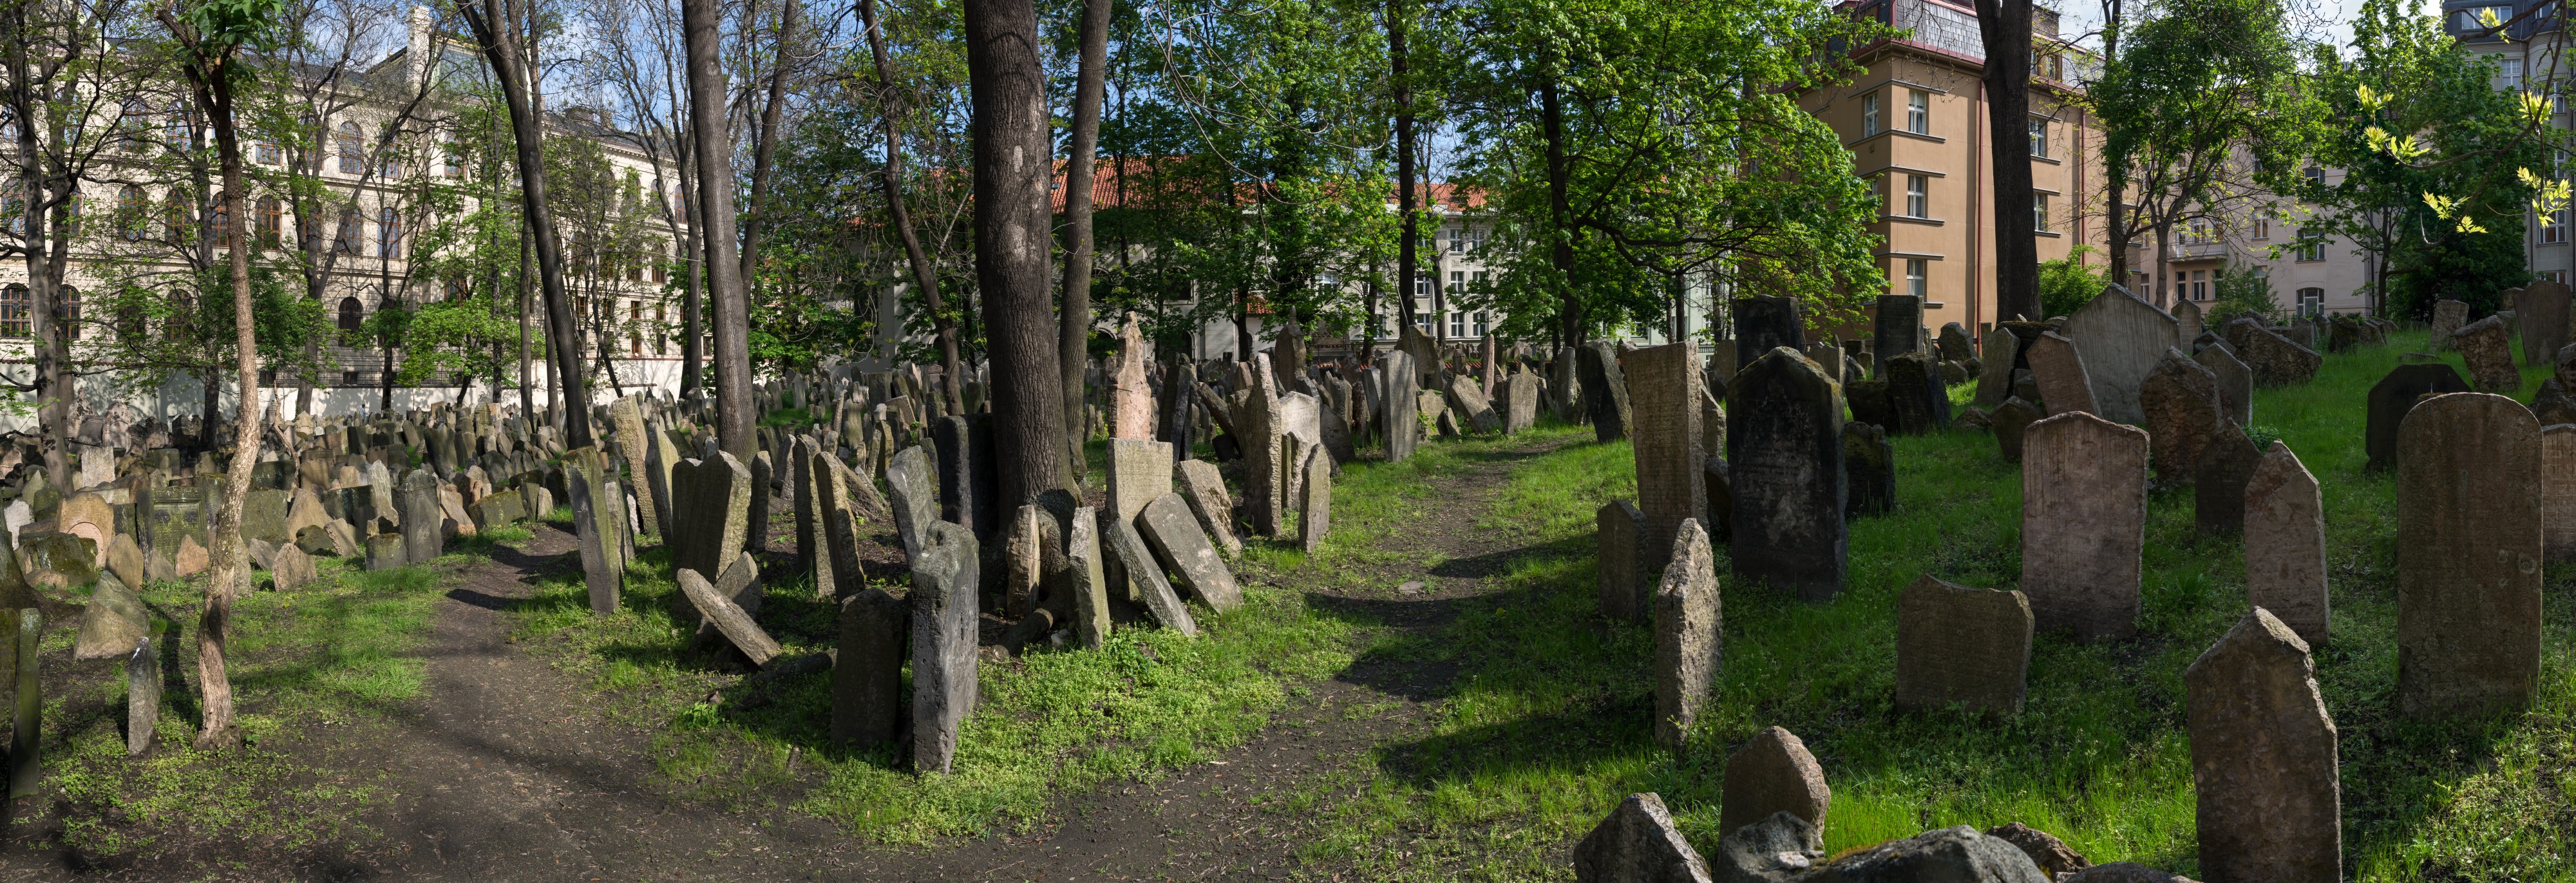 Praha Old Jewish Cemetery Panorama 01